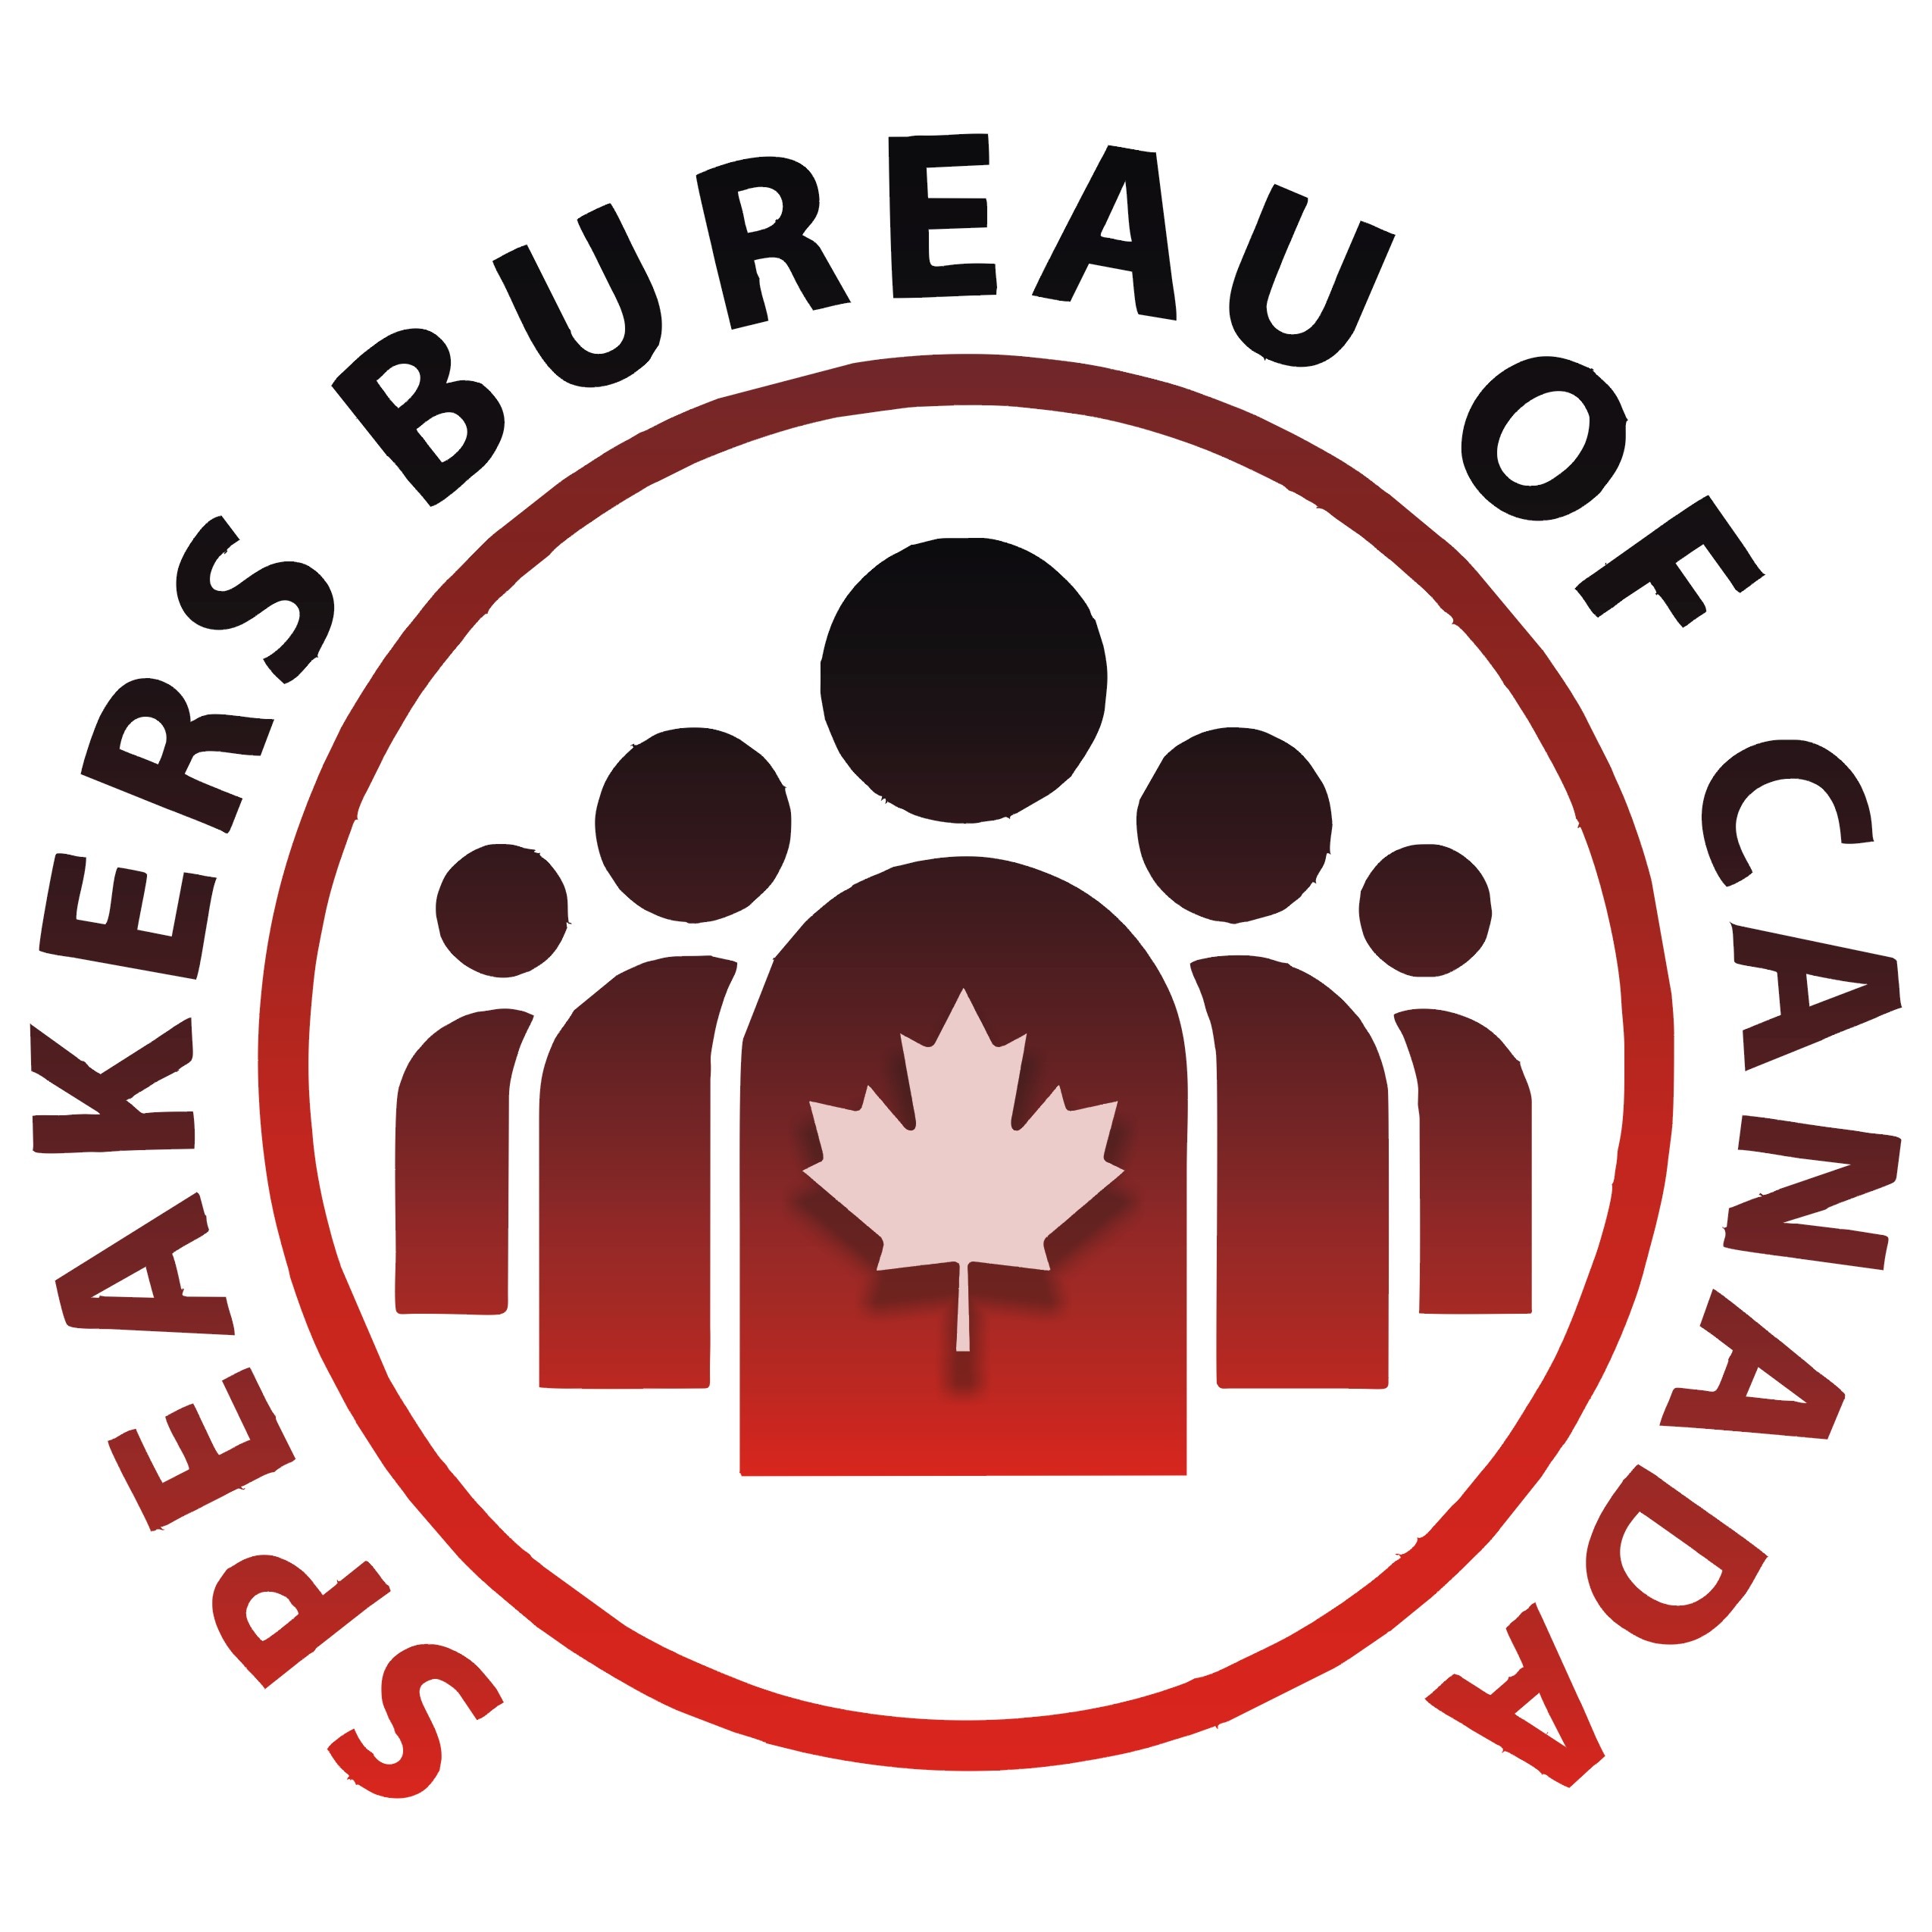 Speakers Bureau of Canada Inc.